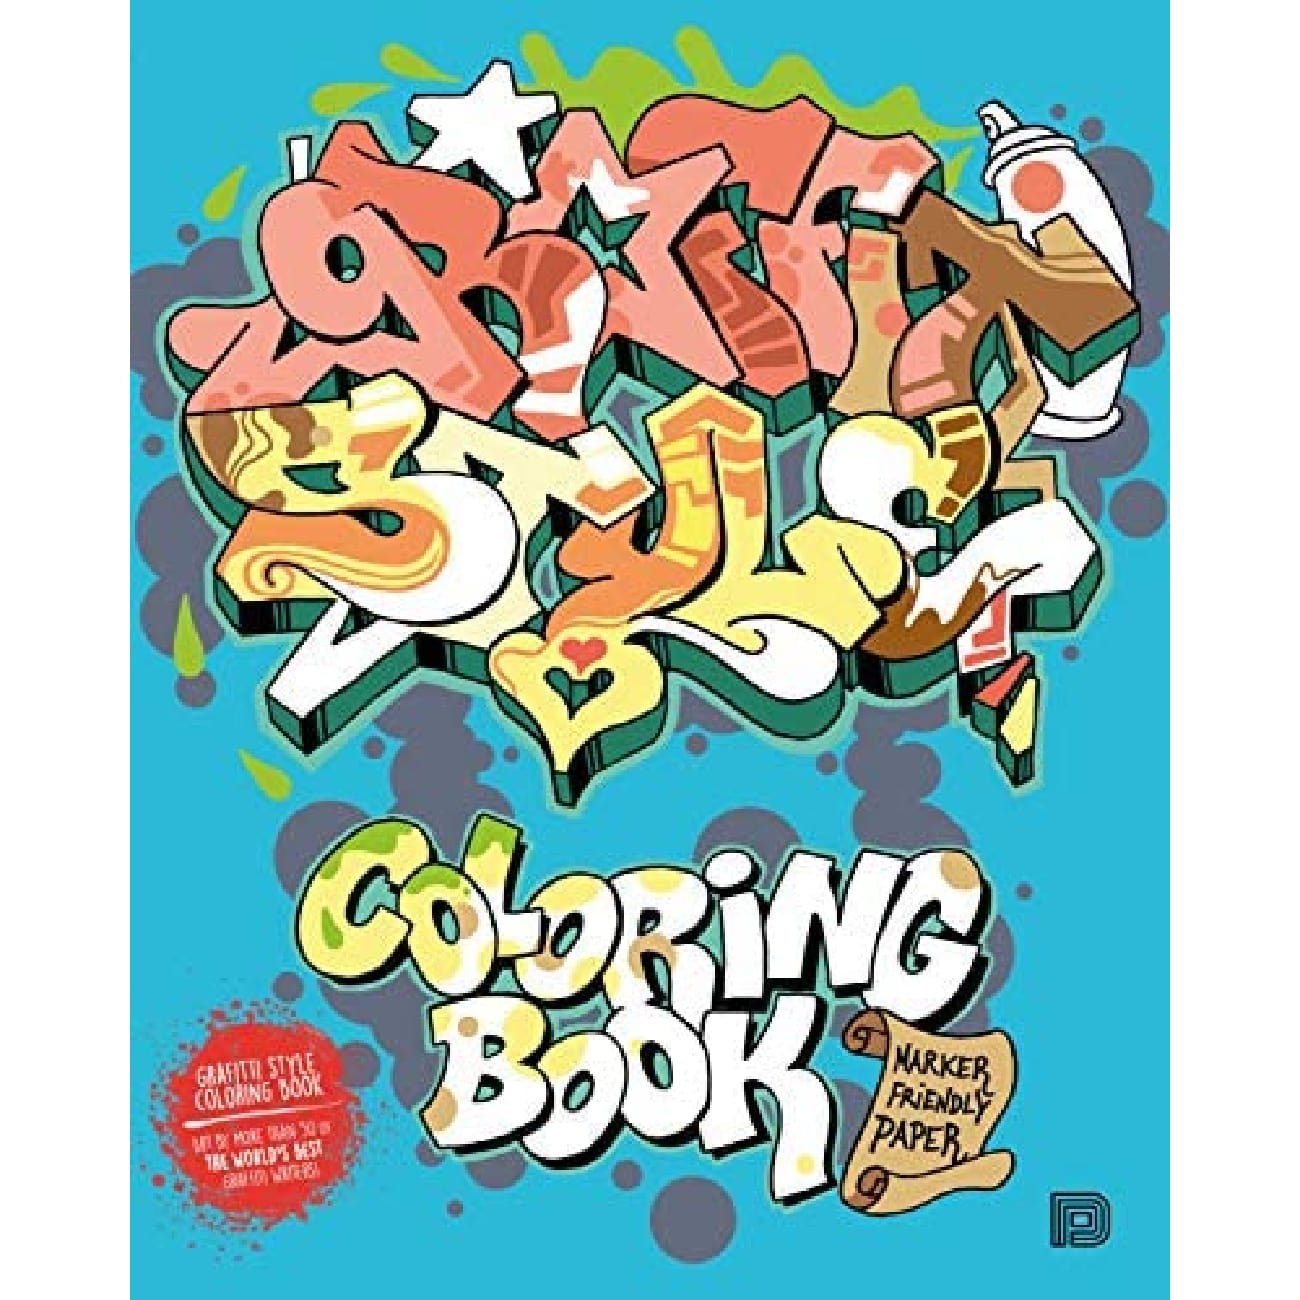 Graffiti Style Coloring Book [Book]